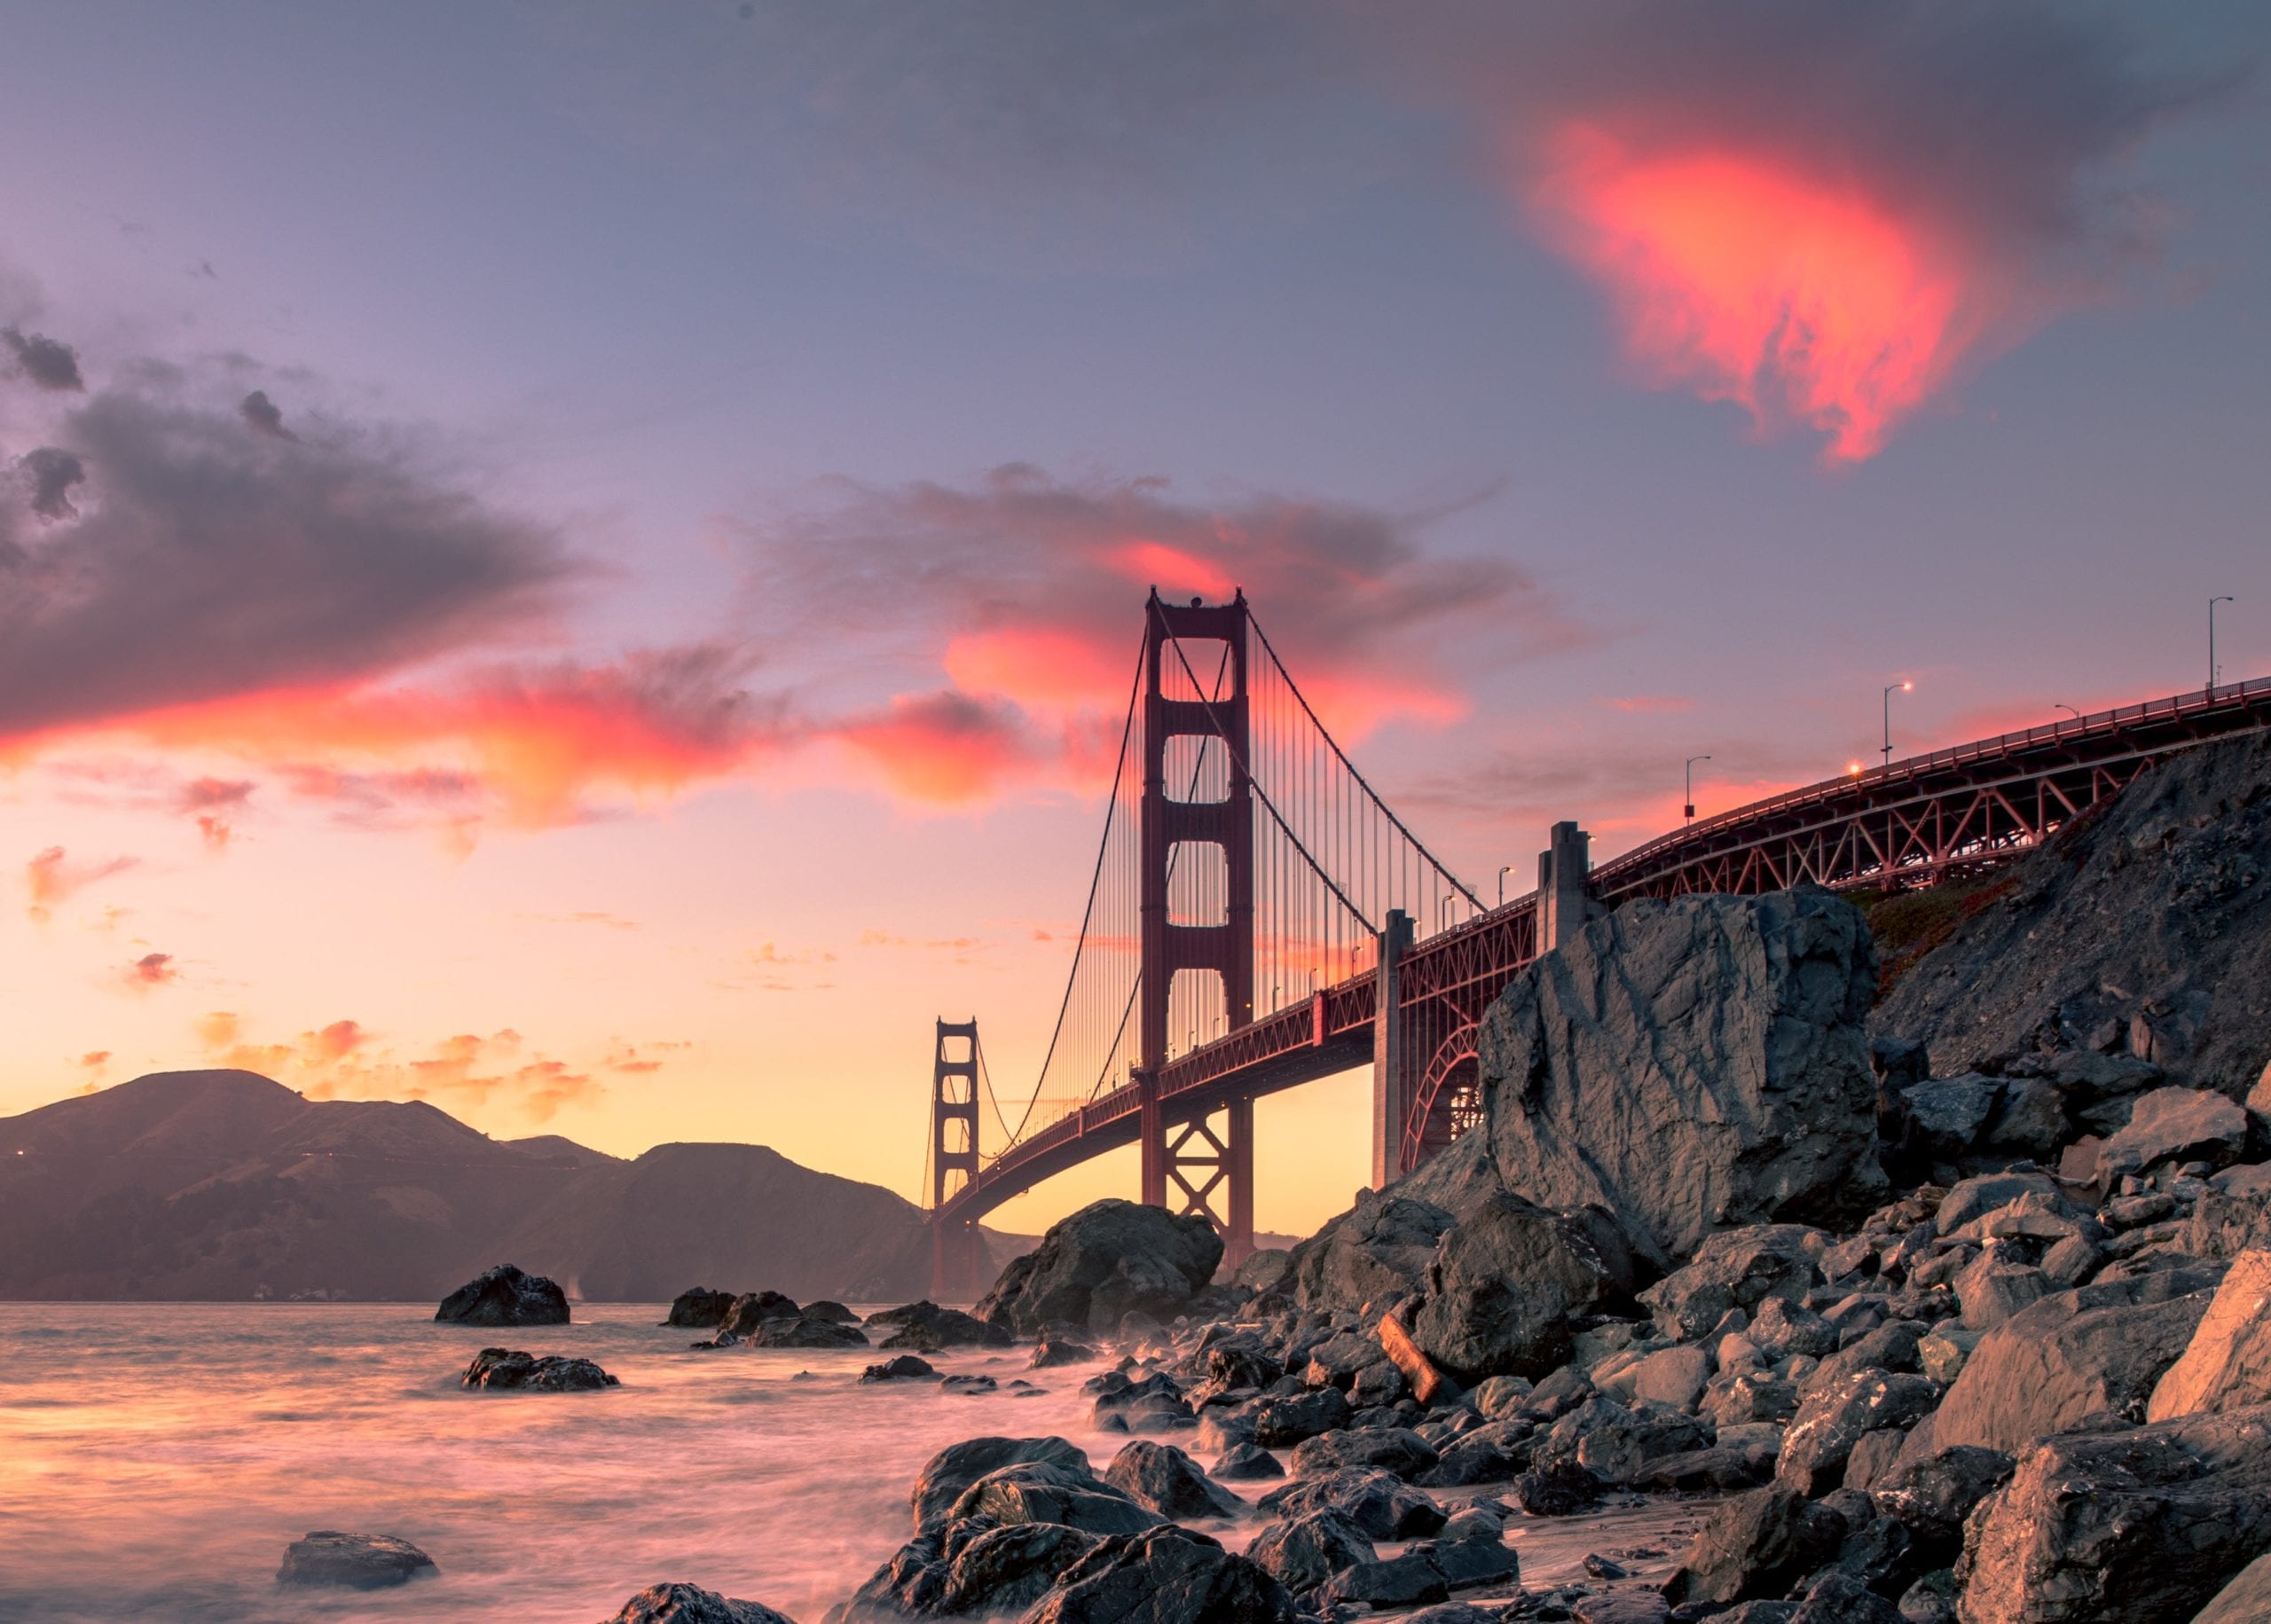 San Francisco, slavné i svým mstem Golden Gate